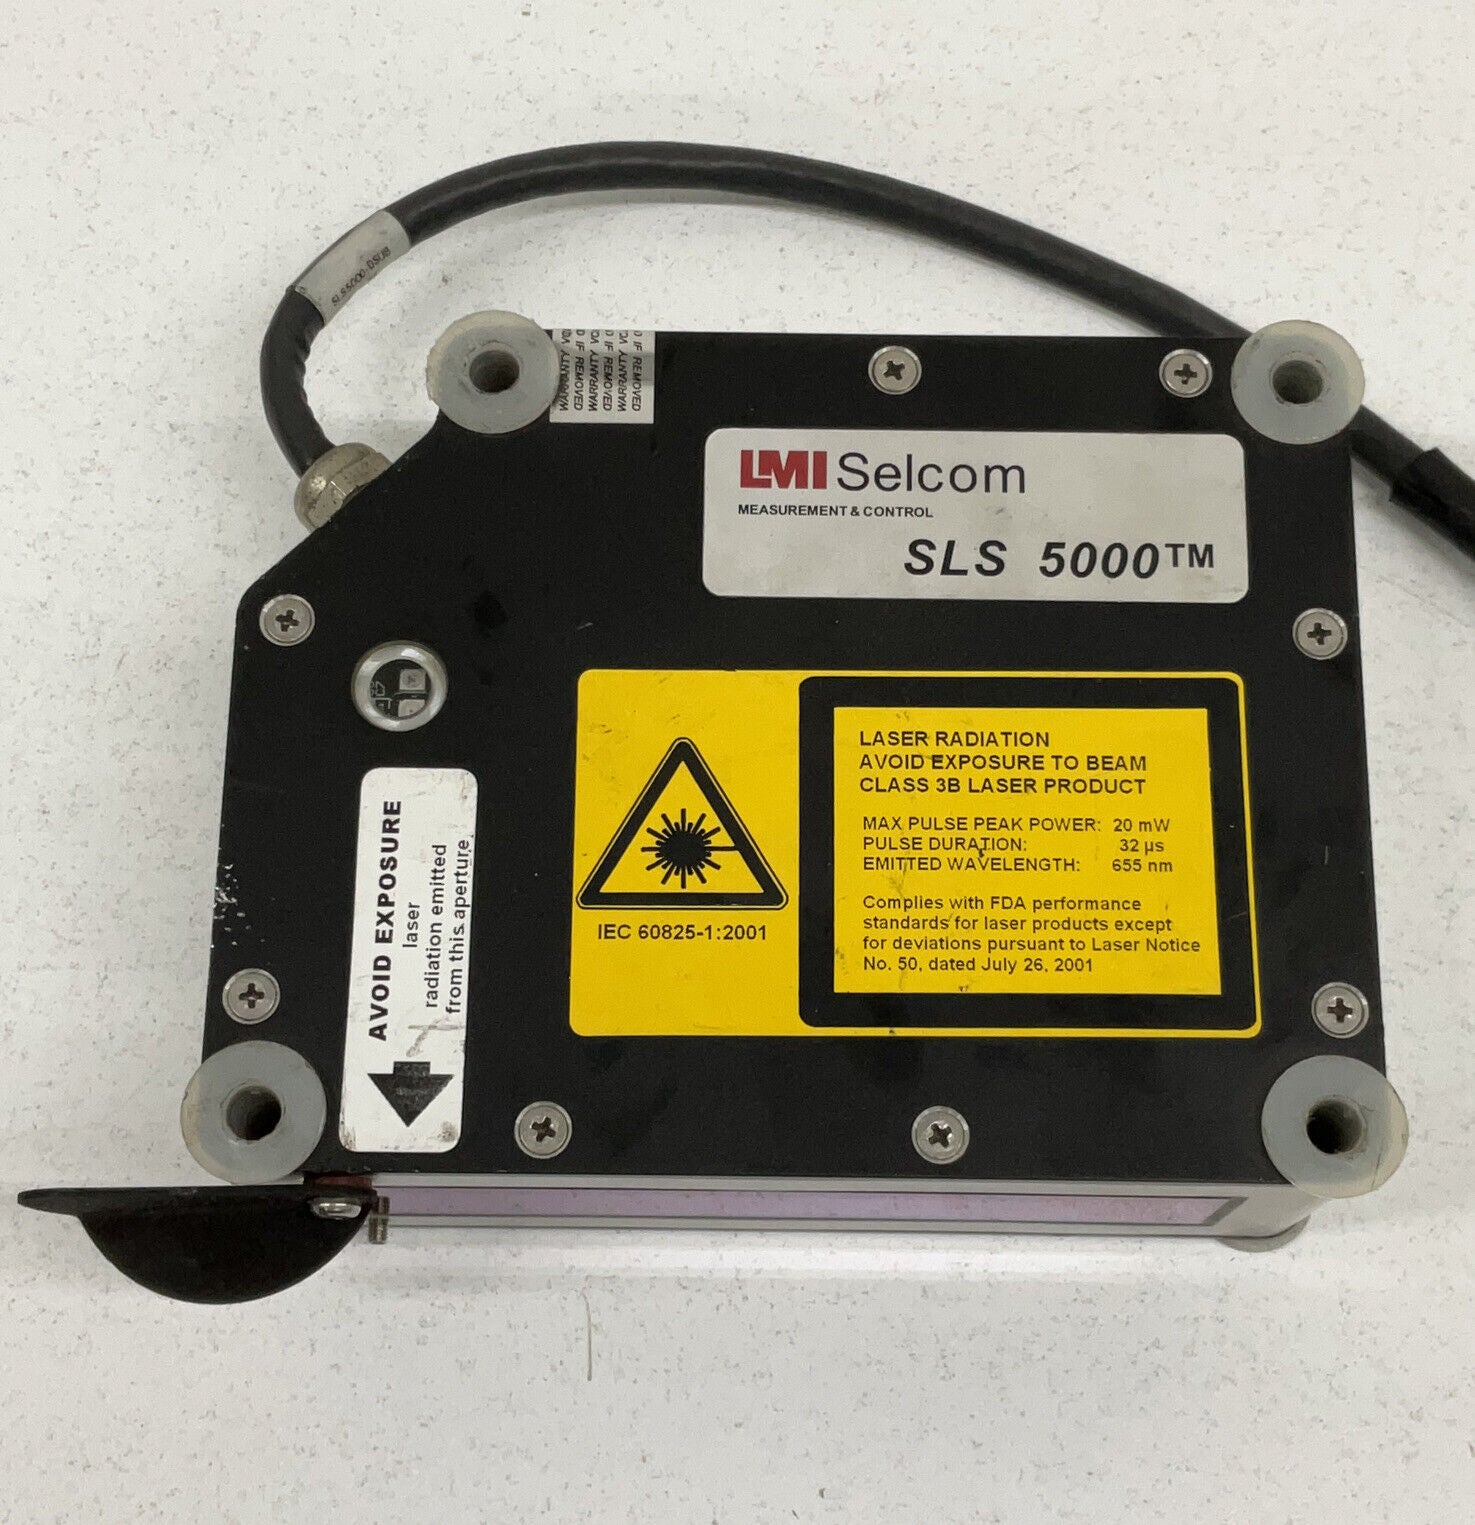 LMI Selcom SLS 5000 Laser Gauging System 35/200-RU (RE246) - 0